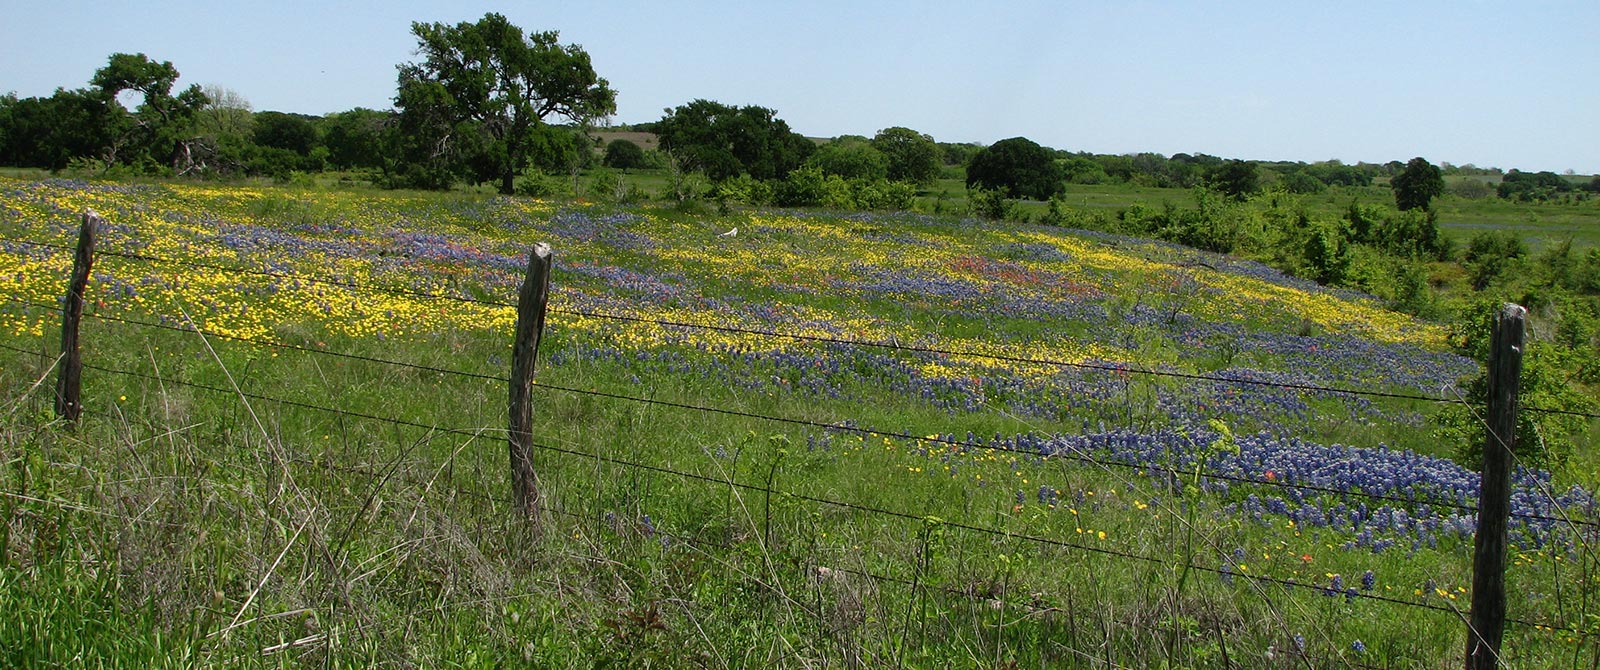 Texas Landscape